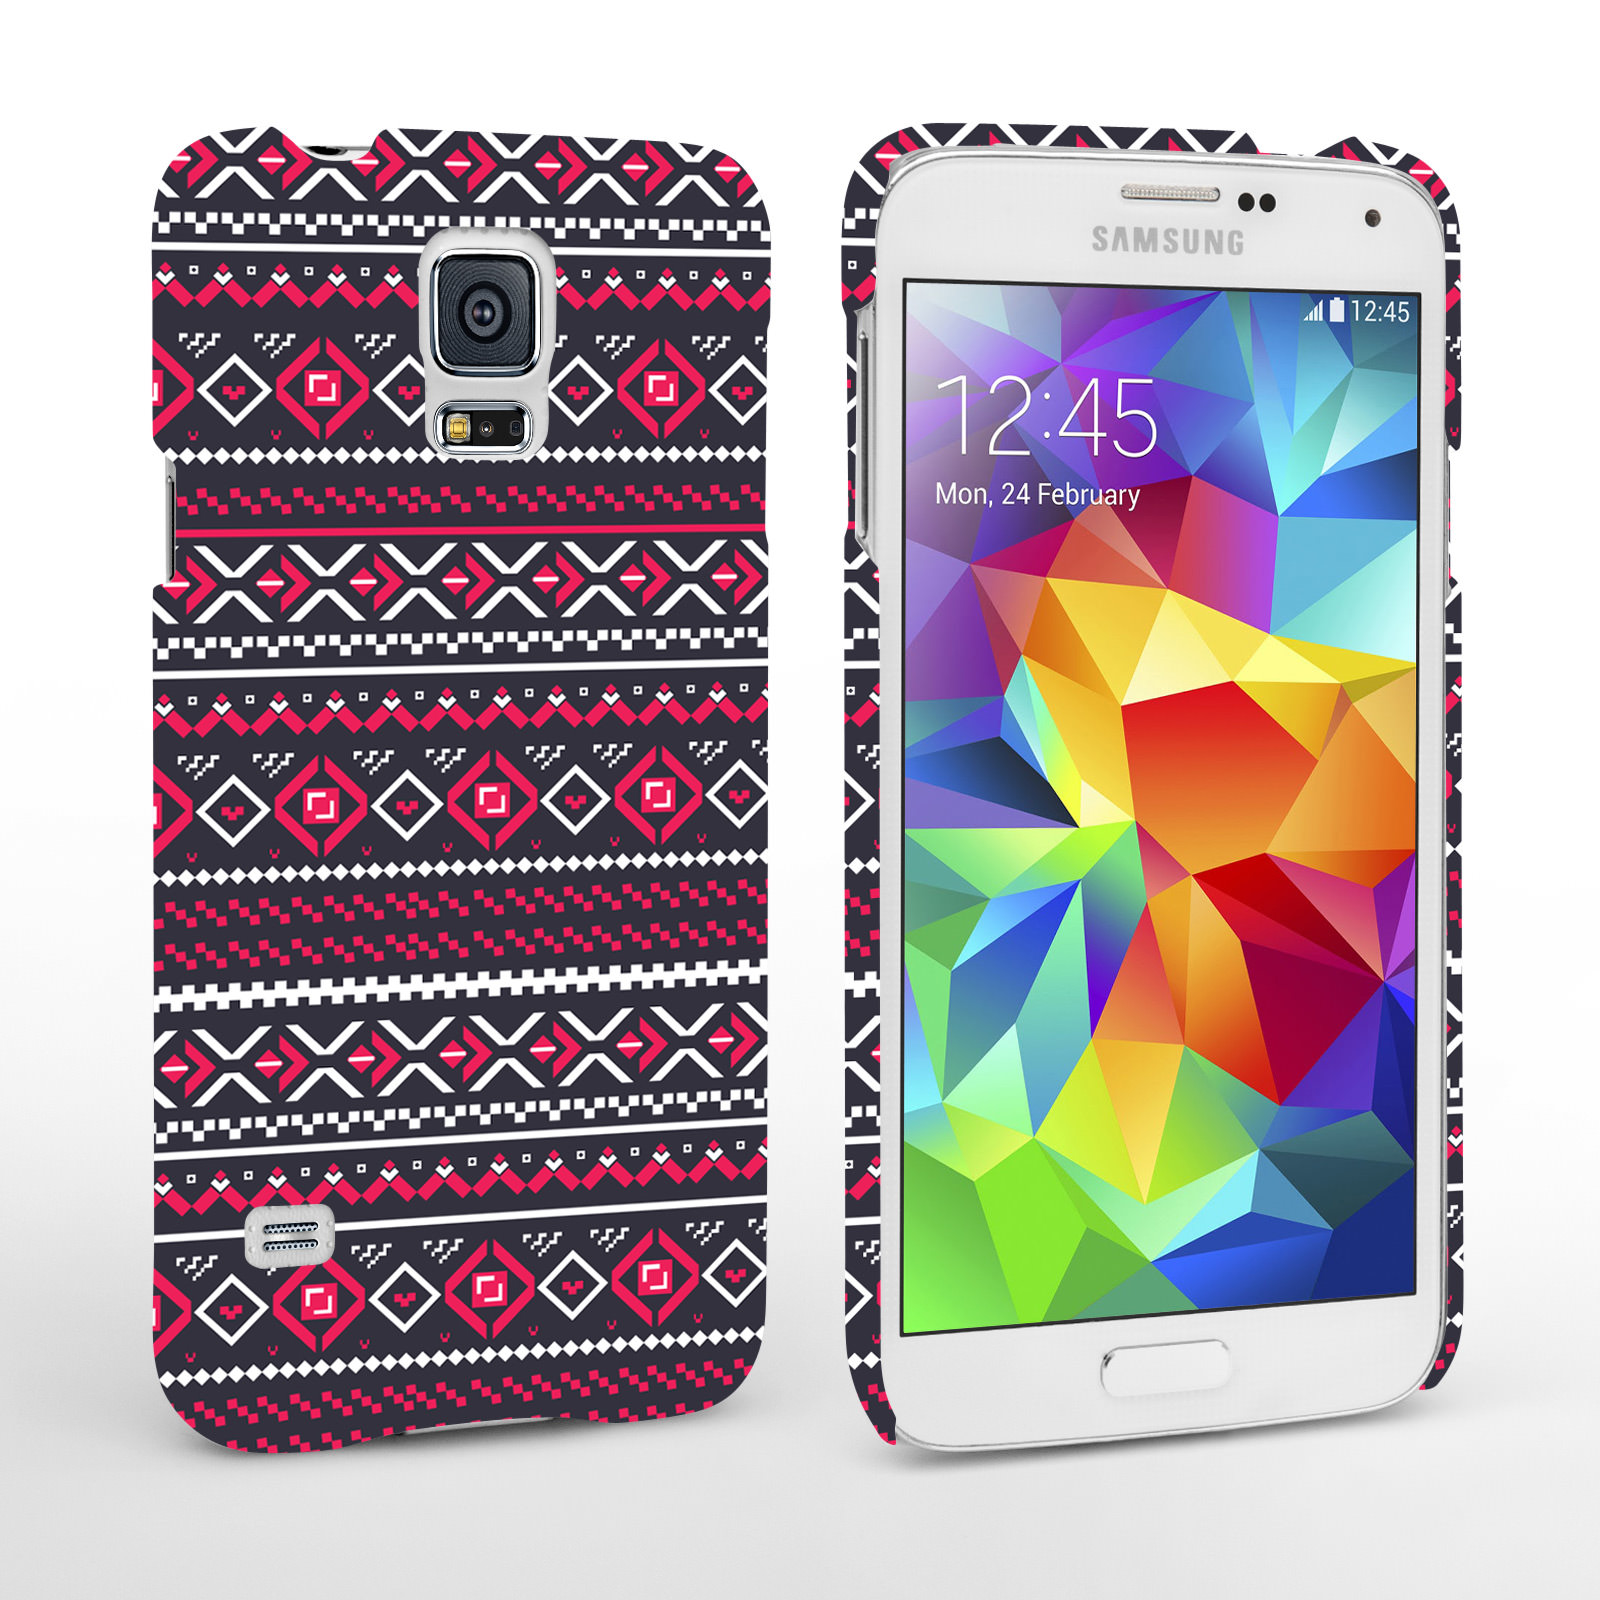 Caseflex Samsung Galaxy S5 Fairisle Case – Grey with Red Background